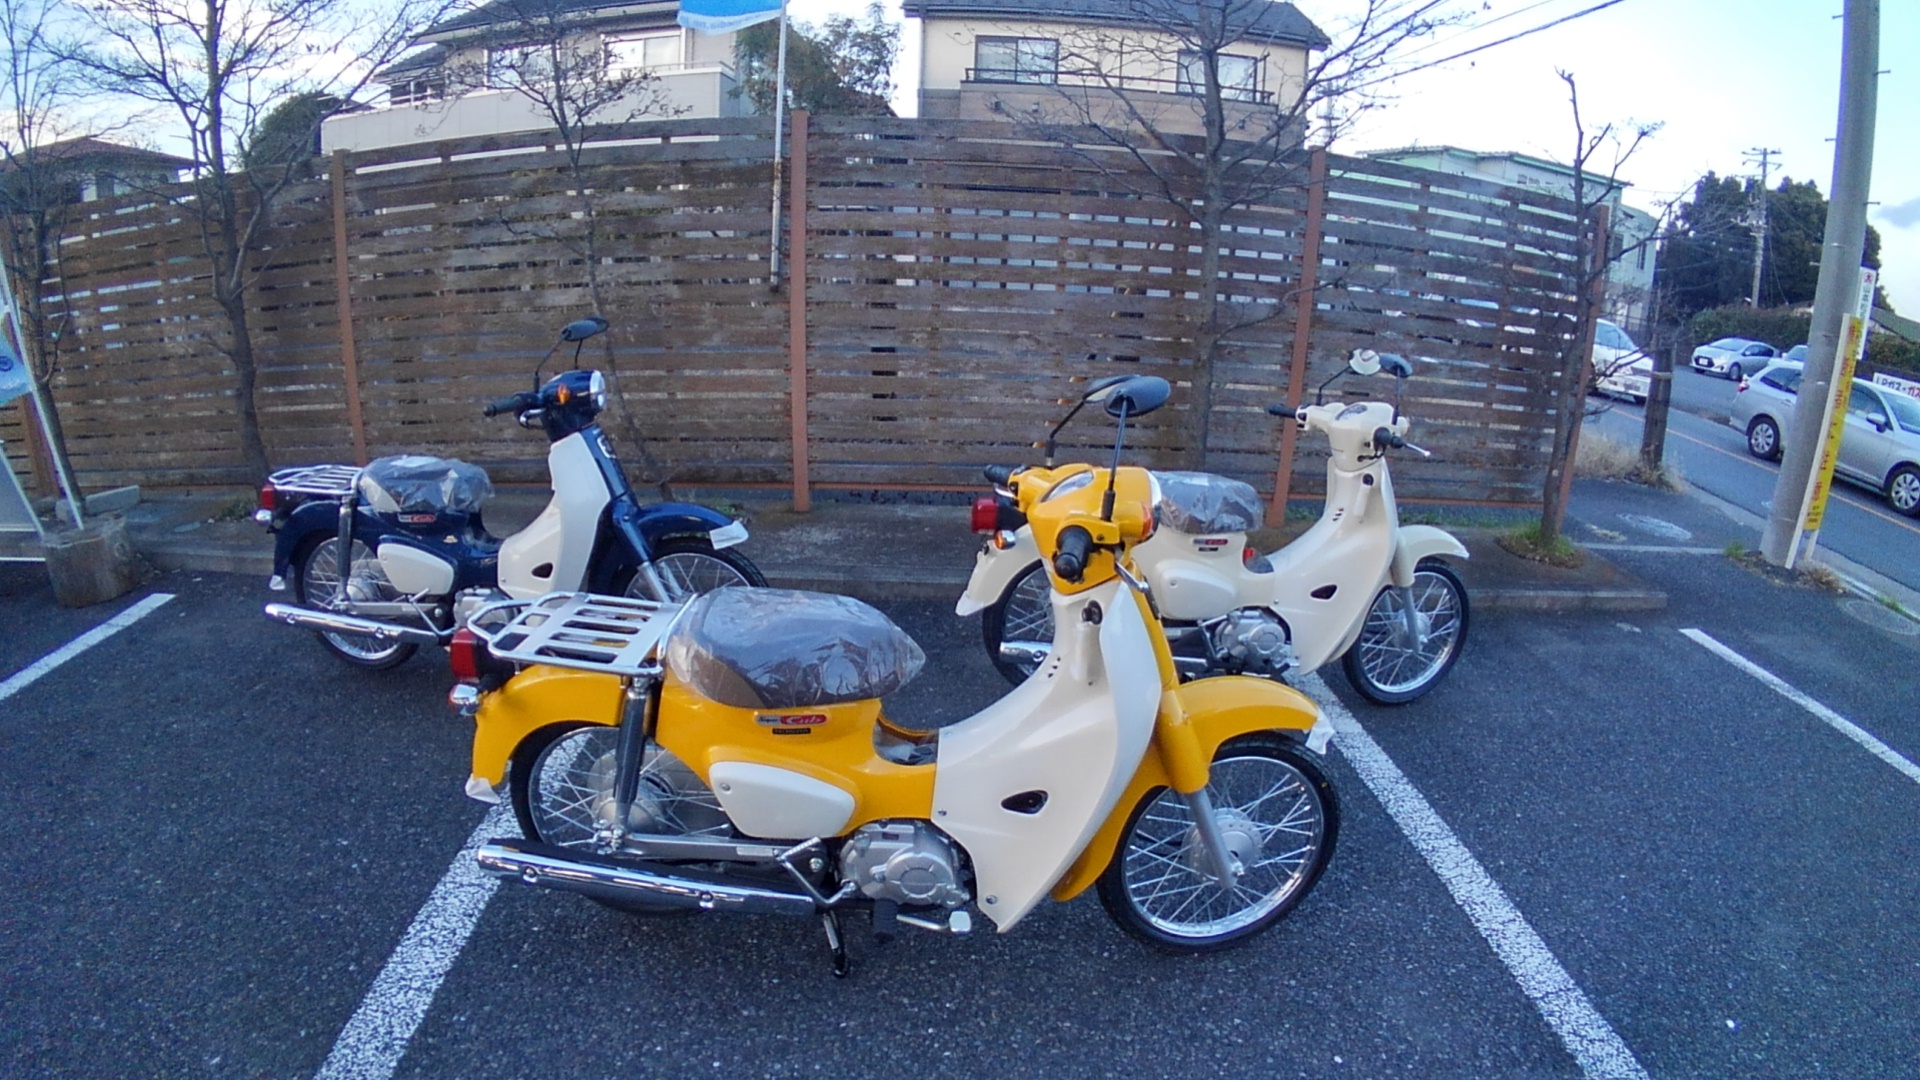 新型スーパーカブ入荷いたしました 最新情報 U Media ユーメディア 中古バイク 新車バイク探しの決定版 神奈川 東京でバイク探すならユーメディア